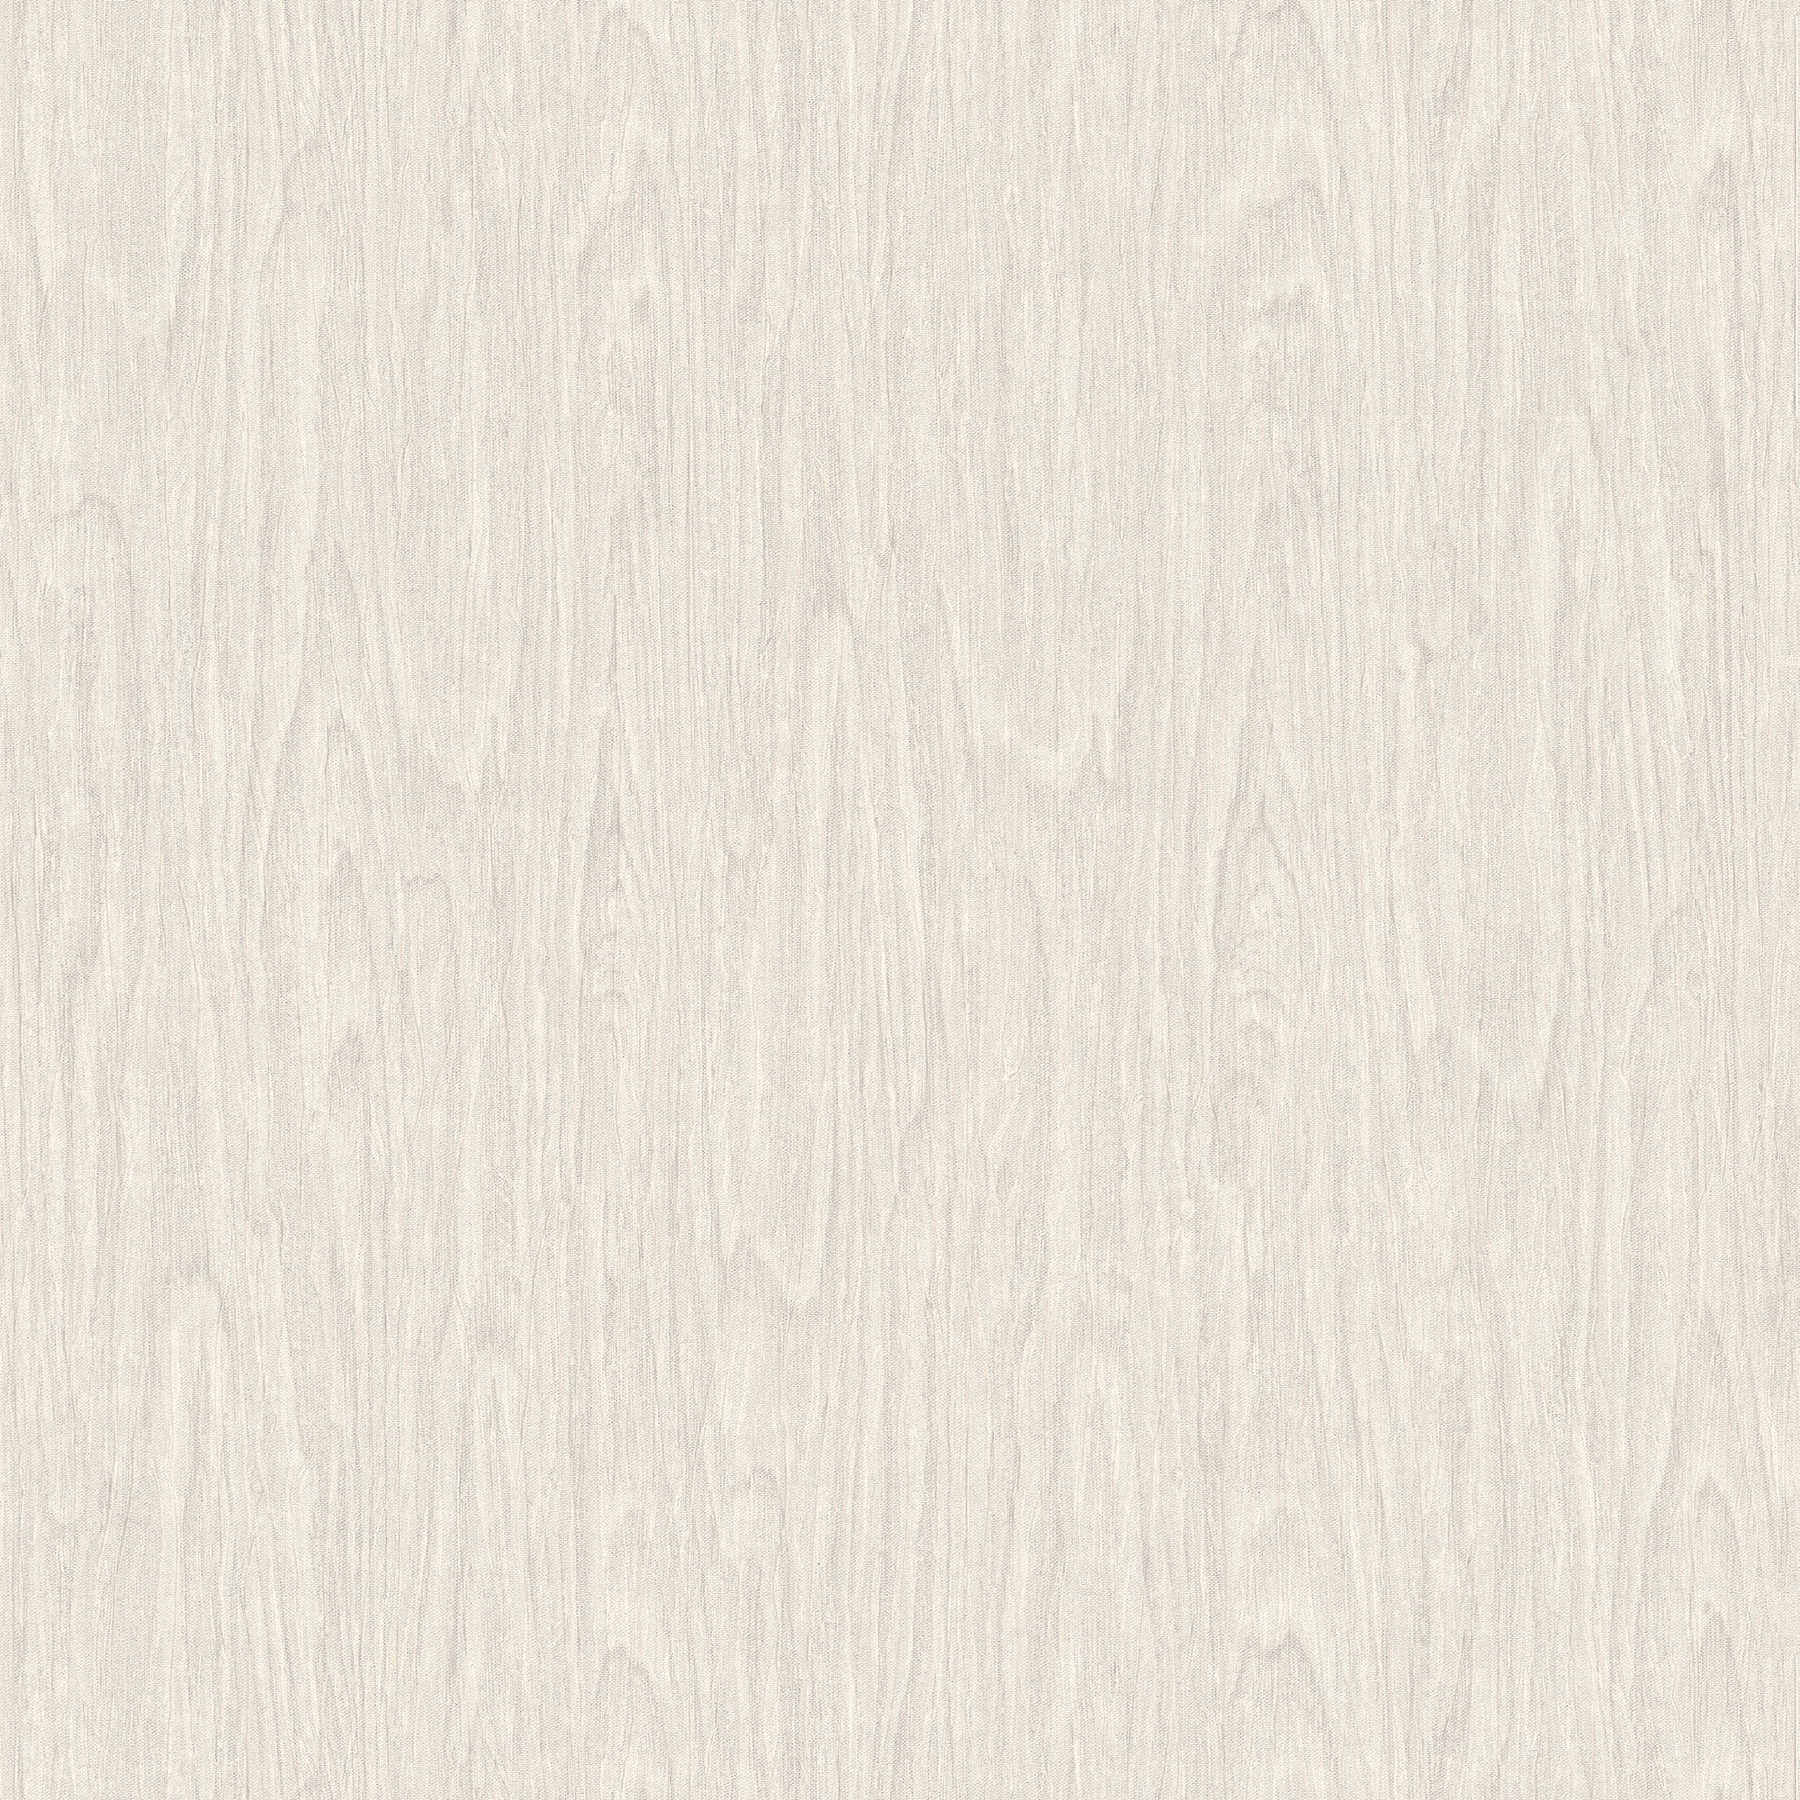 VERSACE Home behang realistische houtlook - beige, crème, wit
